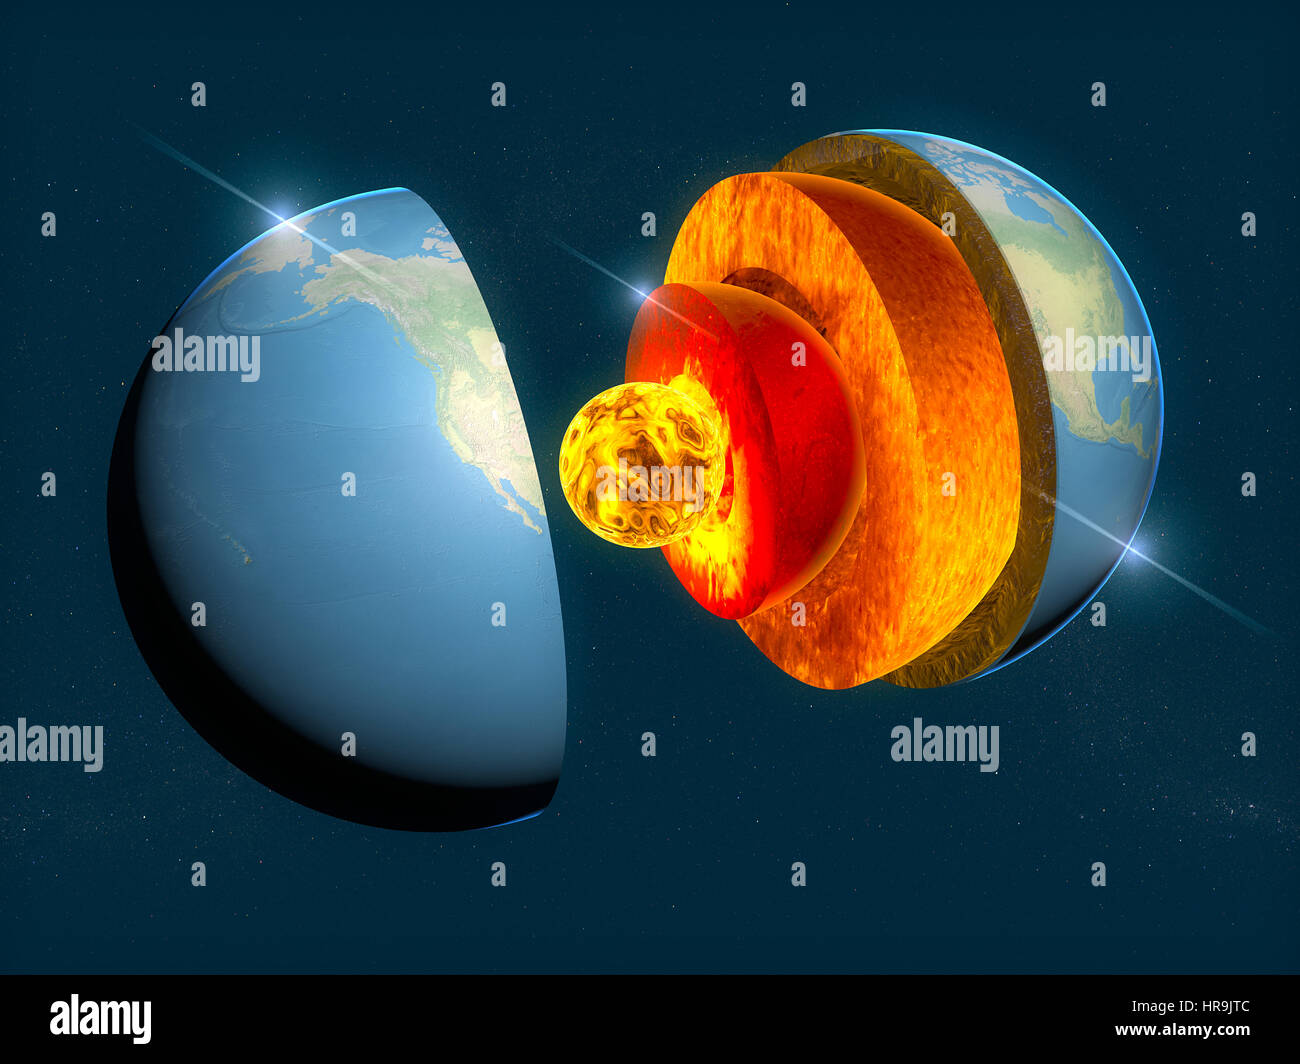 La structure de la terre, la division en couches, la croûte terrestre et core. Le rendu 3D Banque D'Images